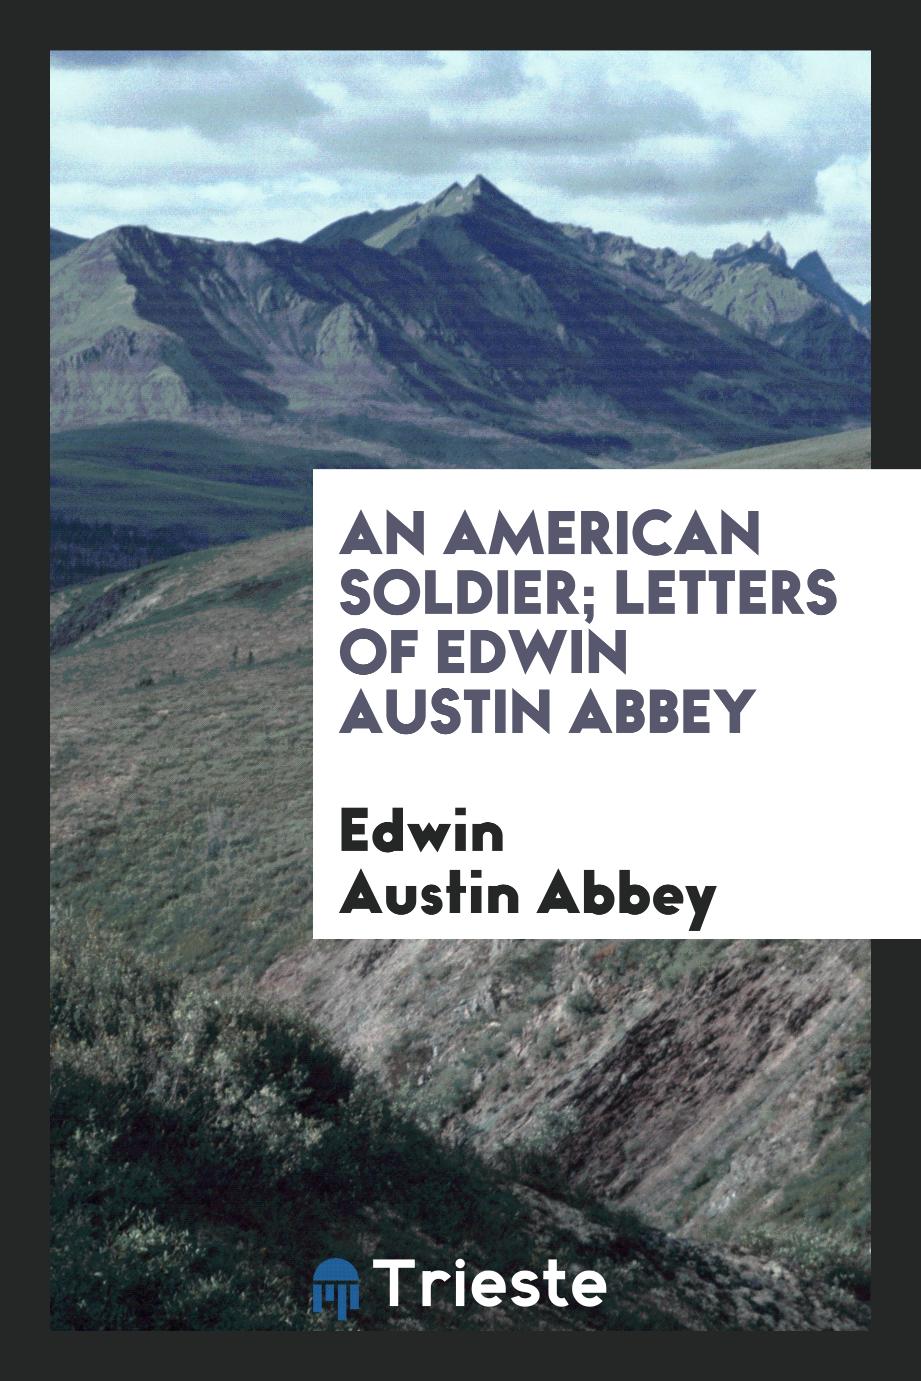 An American soldier; letters of Edwin Austin Abbey